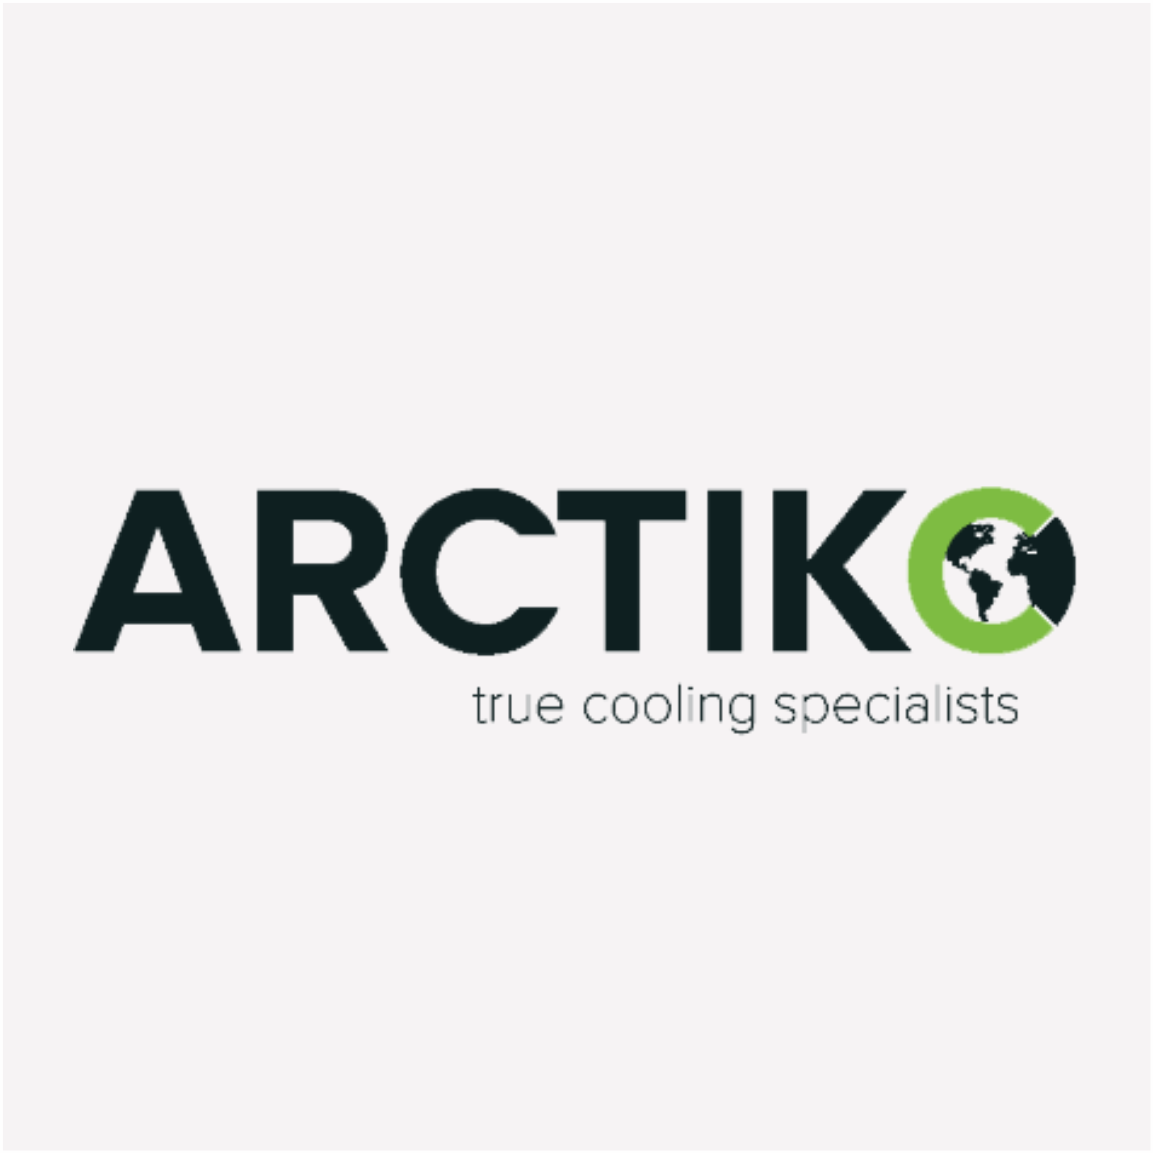 arctiko-logo